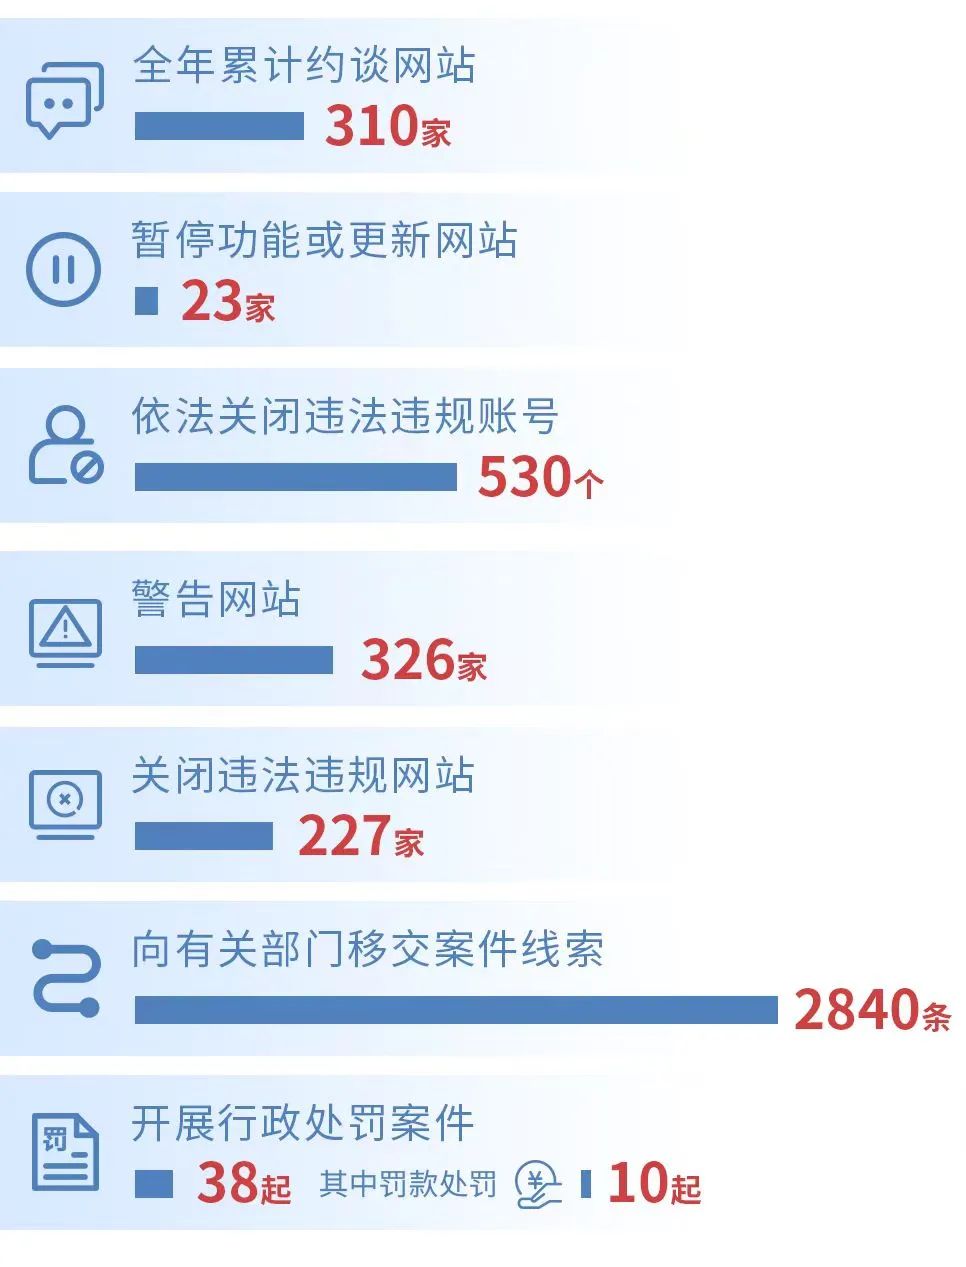 约谈310家、关闭530个！重庆严厉打击网络违法违规行为